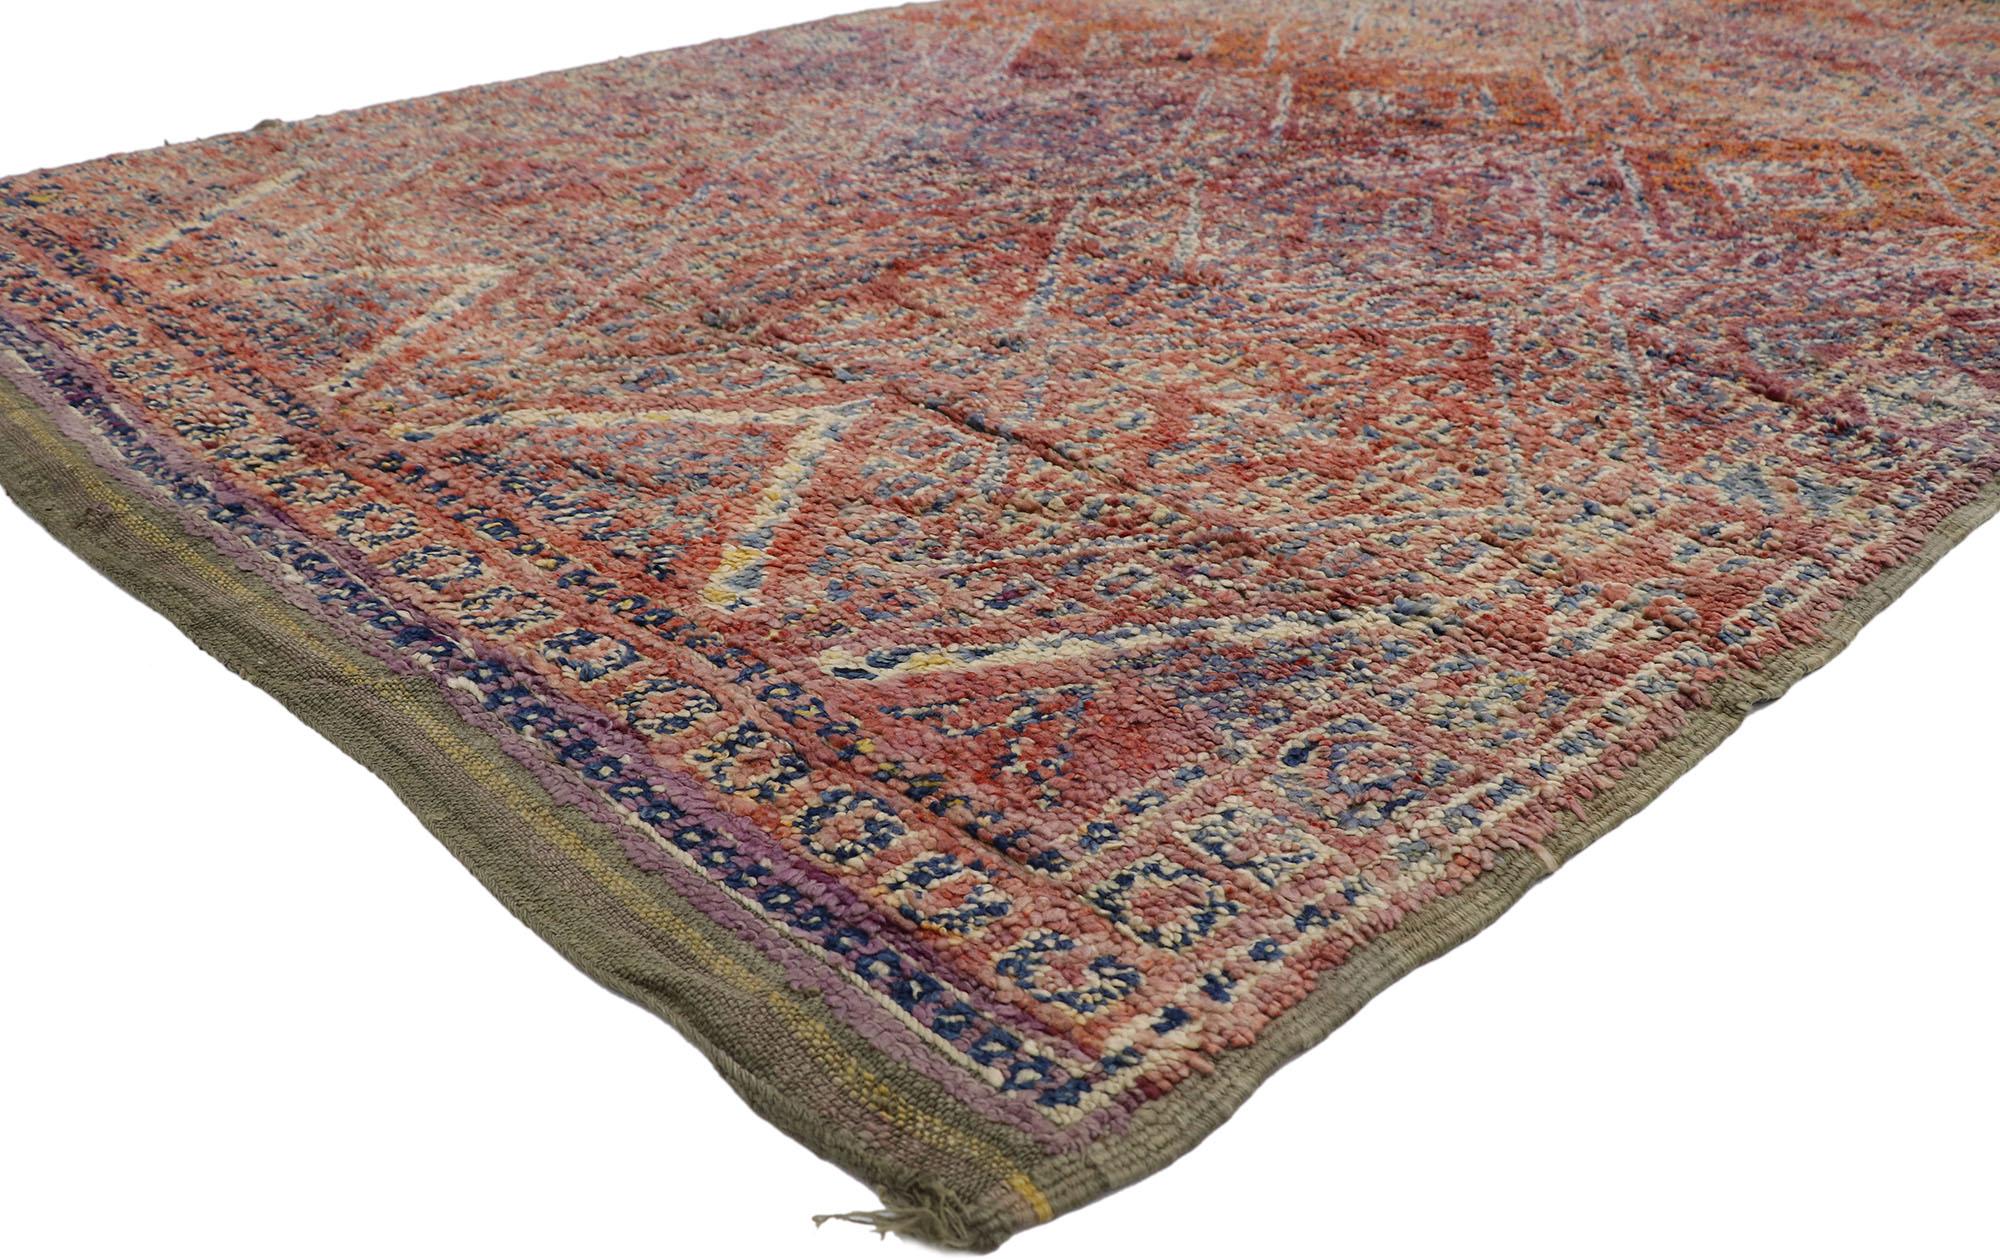 21432 Vintage Beni MGuild Marokkanischer Teppich, 06'03 x 10'00.
Dieser marokkanische Vintage-Teppich von Beni MGuild ist eine Mischung aus gemütlichem Nomaden- und schwülem Bohème-Stil. Das hochdekorative Gittermuster und die verführerische